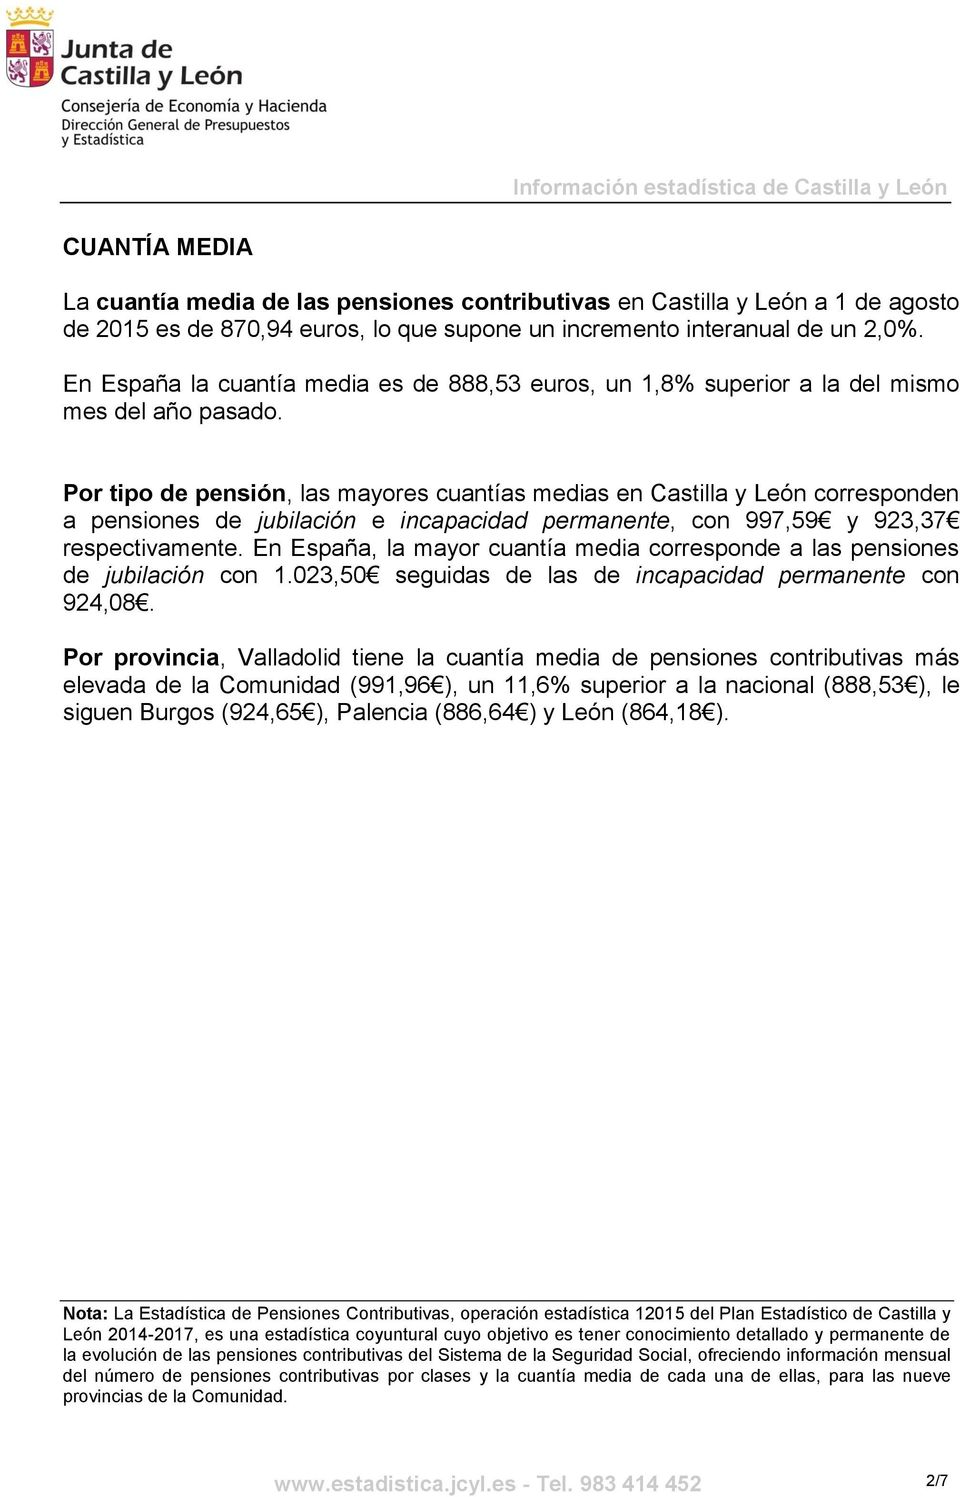 Por tipo de pensión, las mayores cuantías medias en Castilla y León corresponden a pensiones de jubilación e incapacidad, con 997,59 y 923,37 respectivamente.